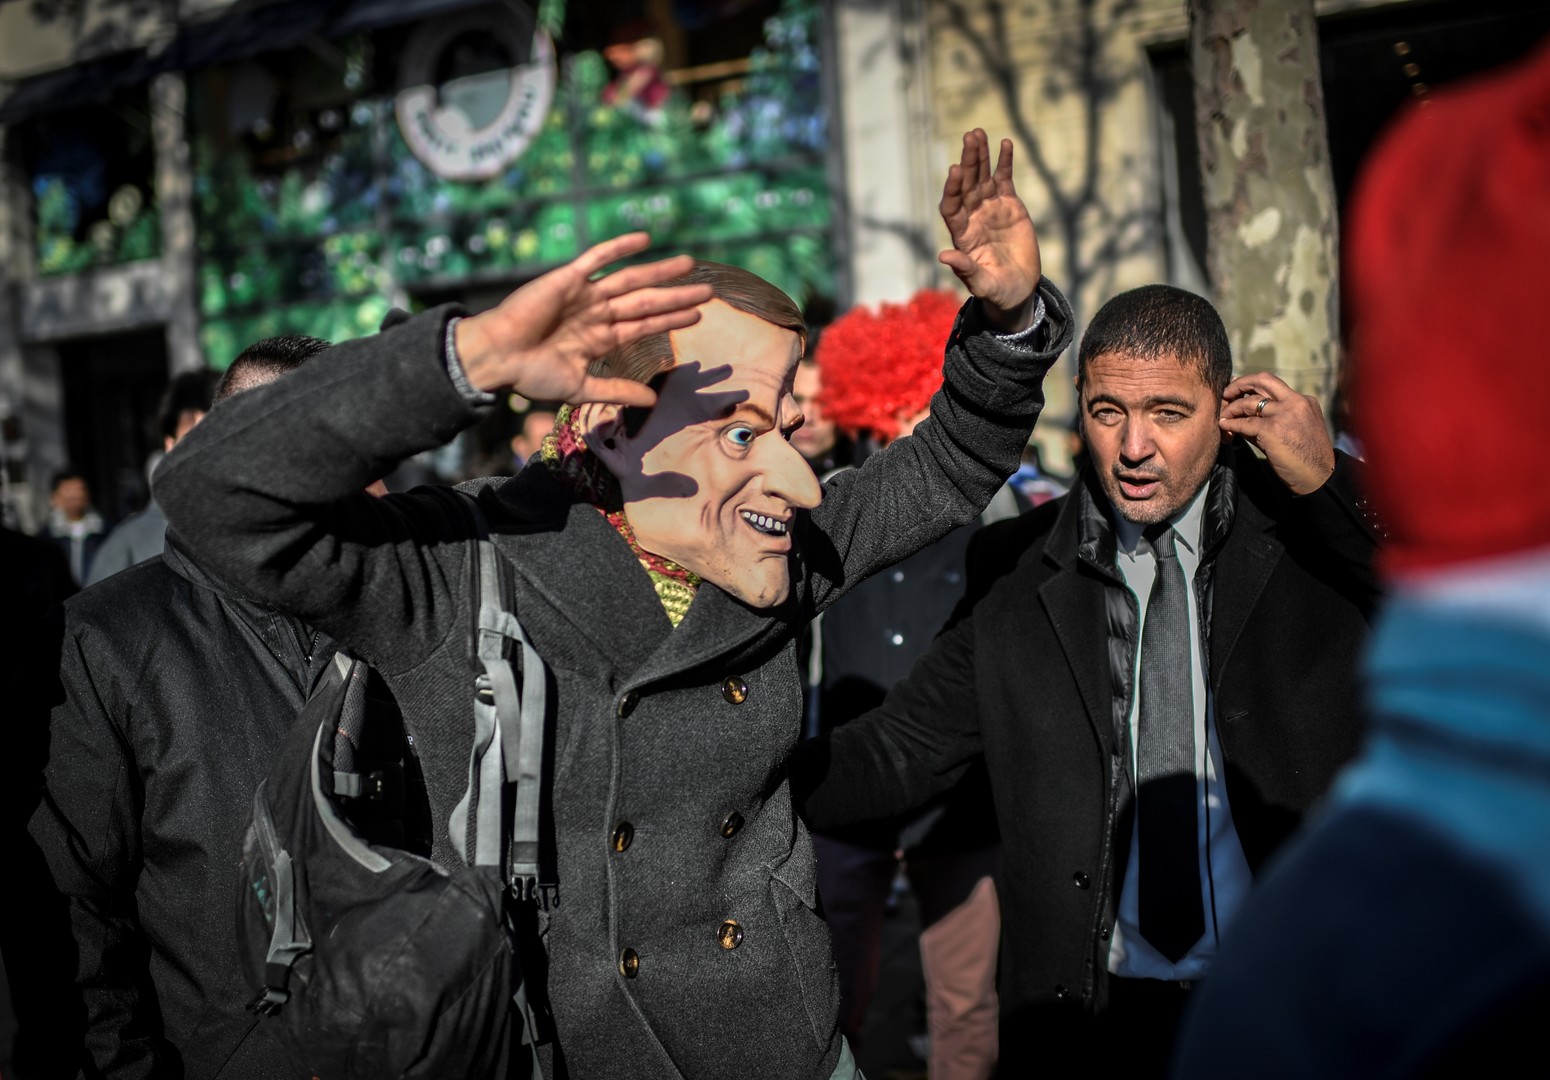 «Paye tes impôts !» : Attac «fête» l'inauguration de l'Apple Store des Champs-Elysées (IMAGES)